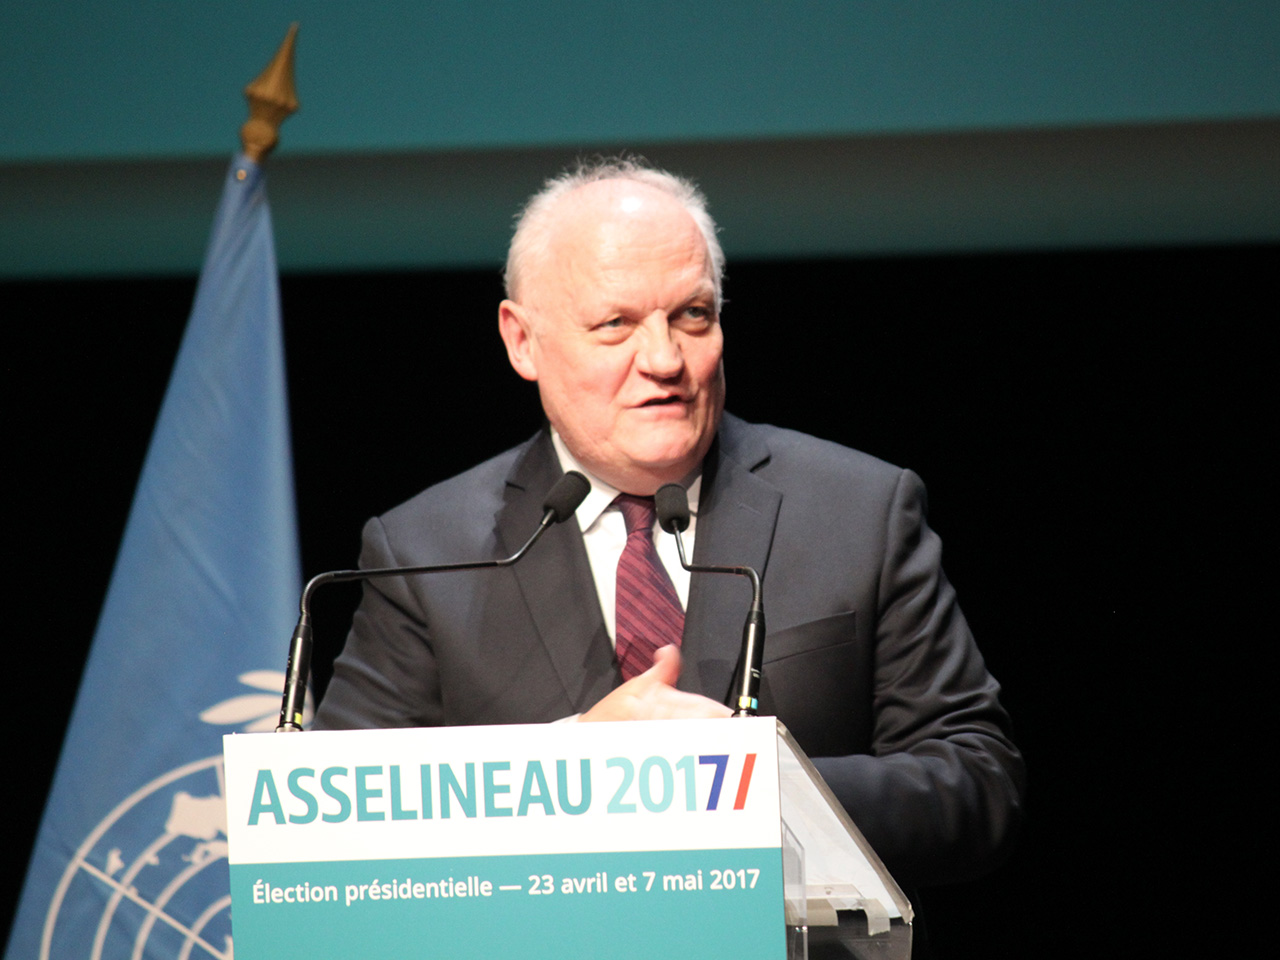 François Asselineau à la tribune - LyonMag